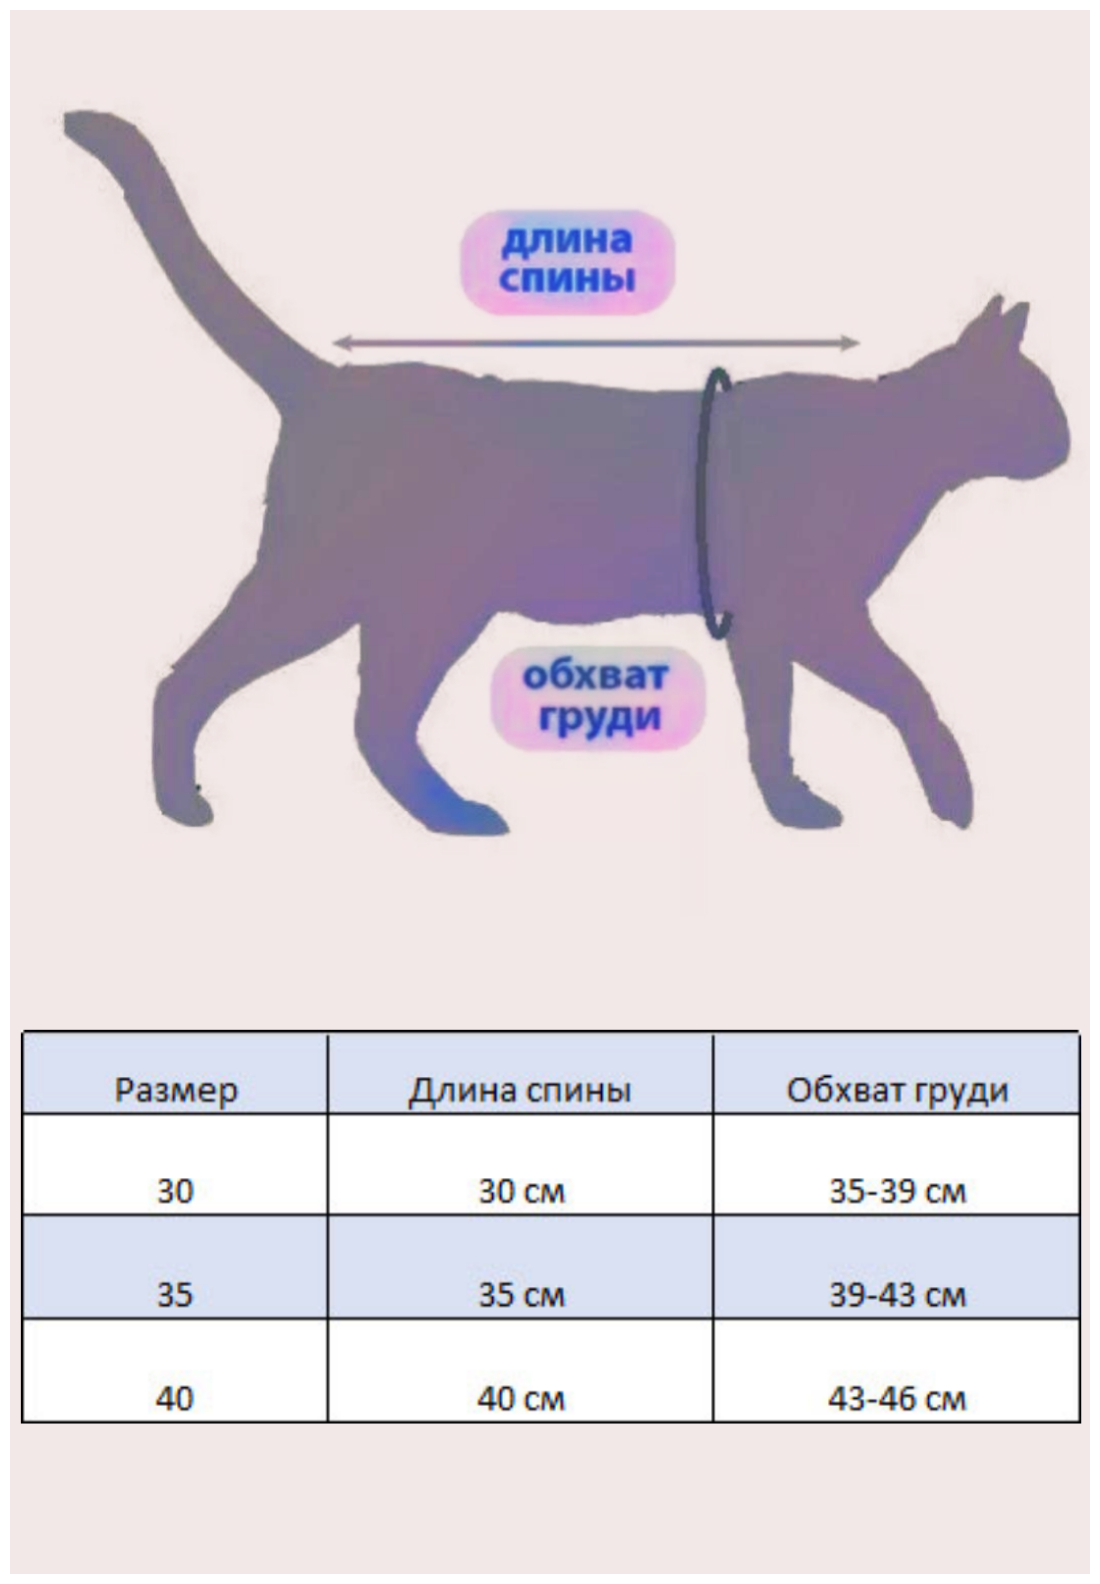 Свитшот для кошек, размер 35 (длина спины 35см), цвет индиго / толстовка свитшот свитер для кошек сфинкс / одежда для животных - фотография № 2